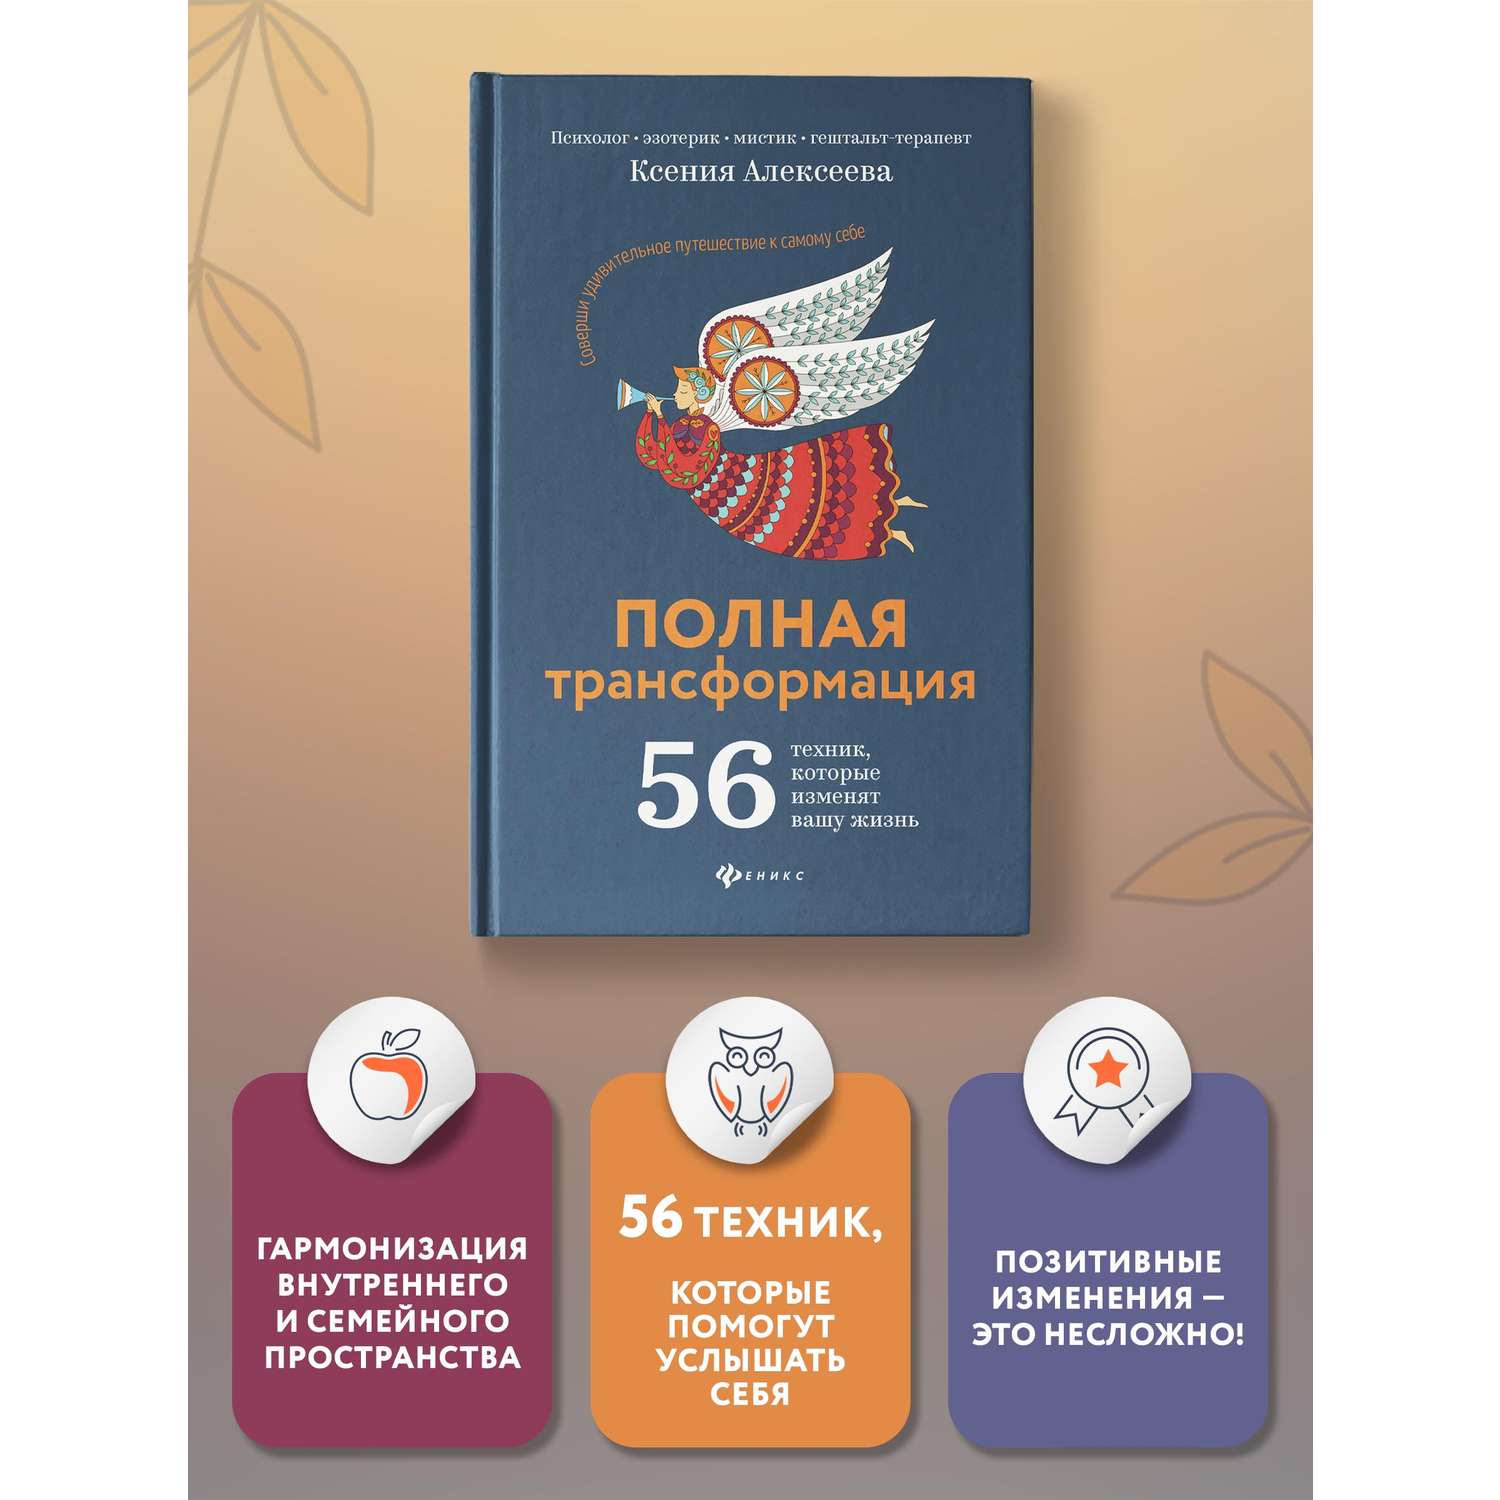 Книга Феникс Полная трансформация. 56 техник которые изменят вашу жизнь - фото 2